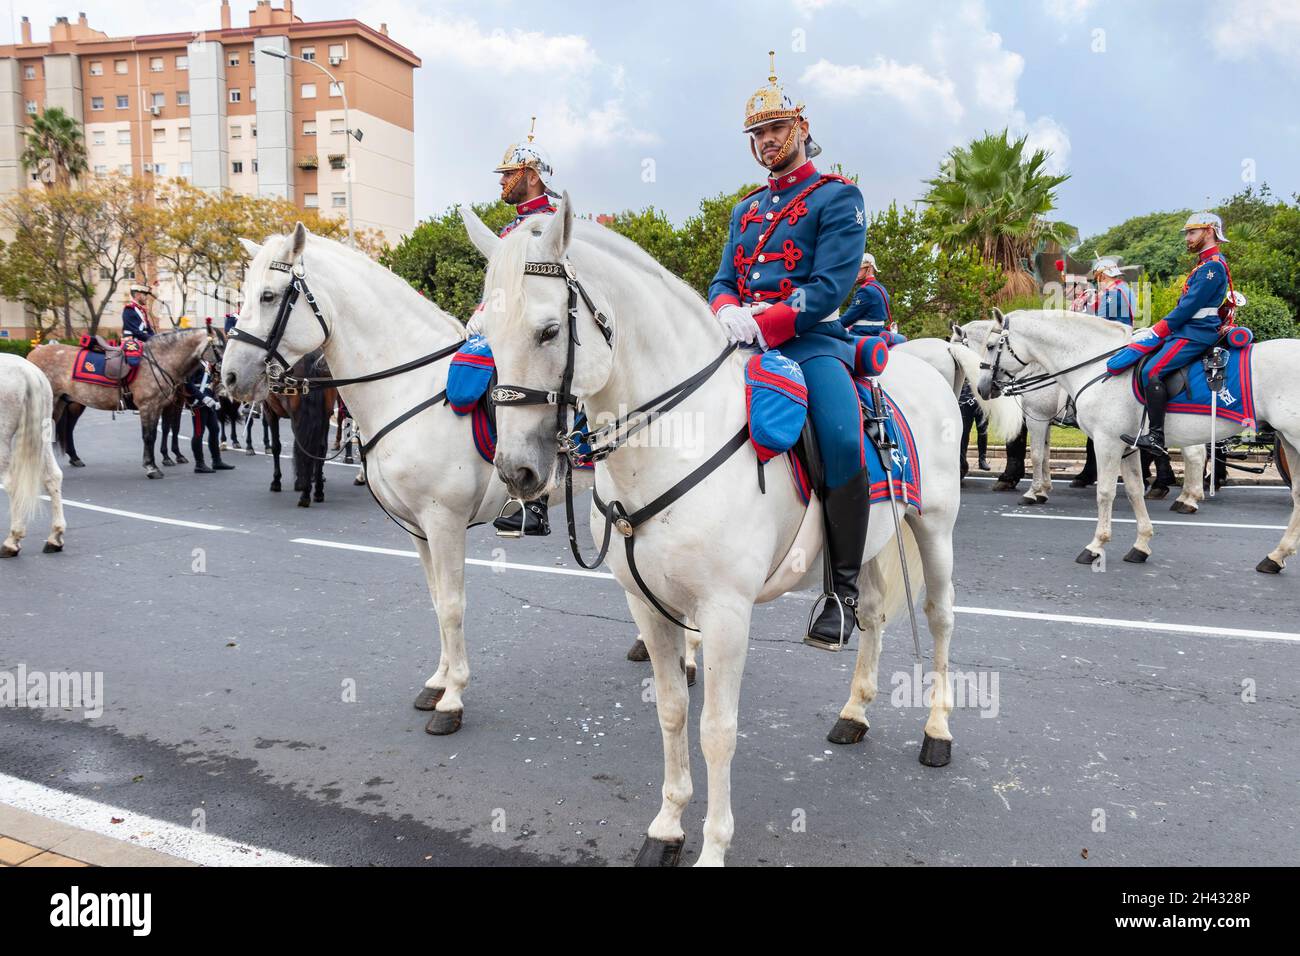 Huelva, Espagne - 30 octobre 2021 : les gardes royaux du cheval dans un serment d'allégeance au drapeau espagnol des civils qui le souhaitent Banque D'Images